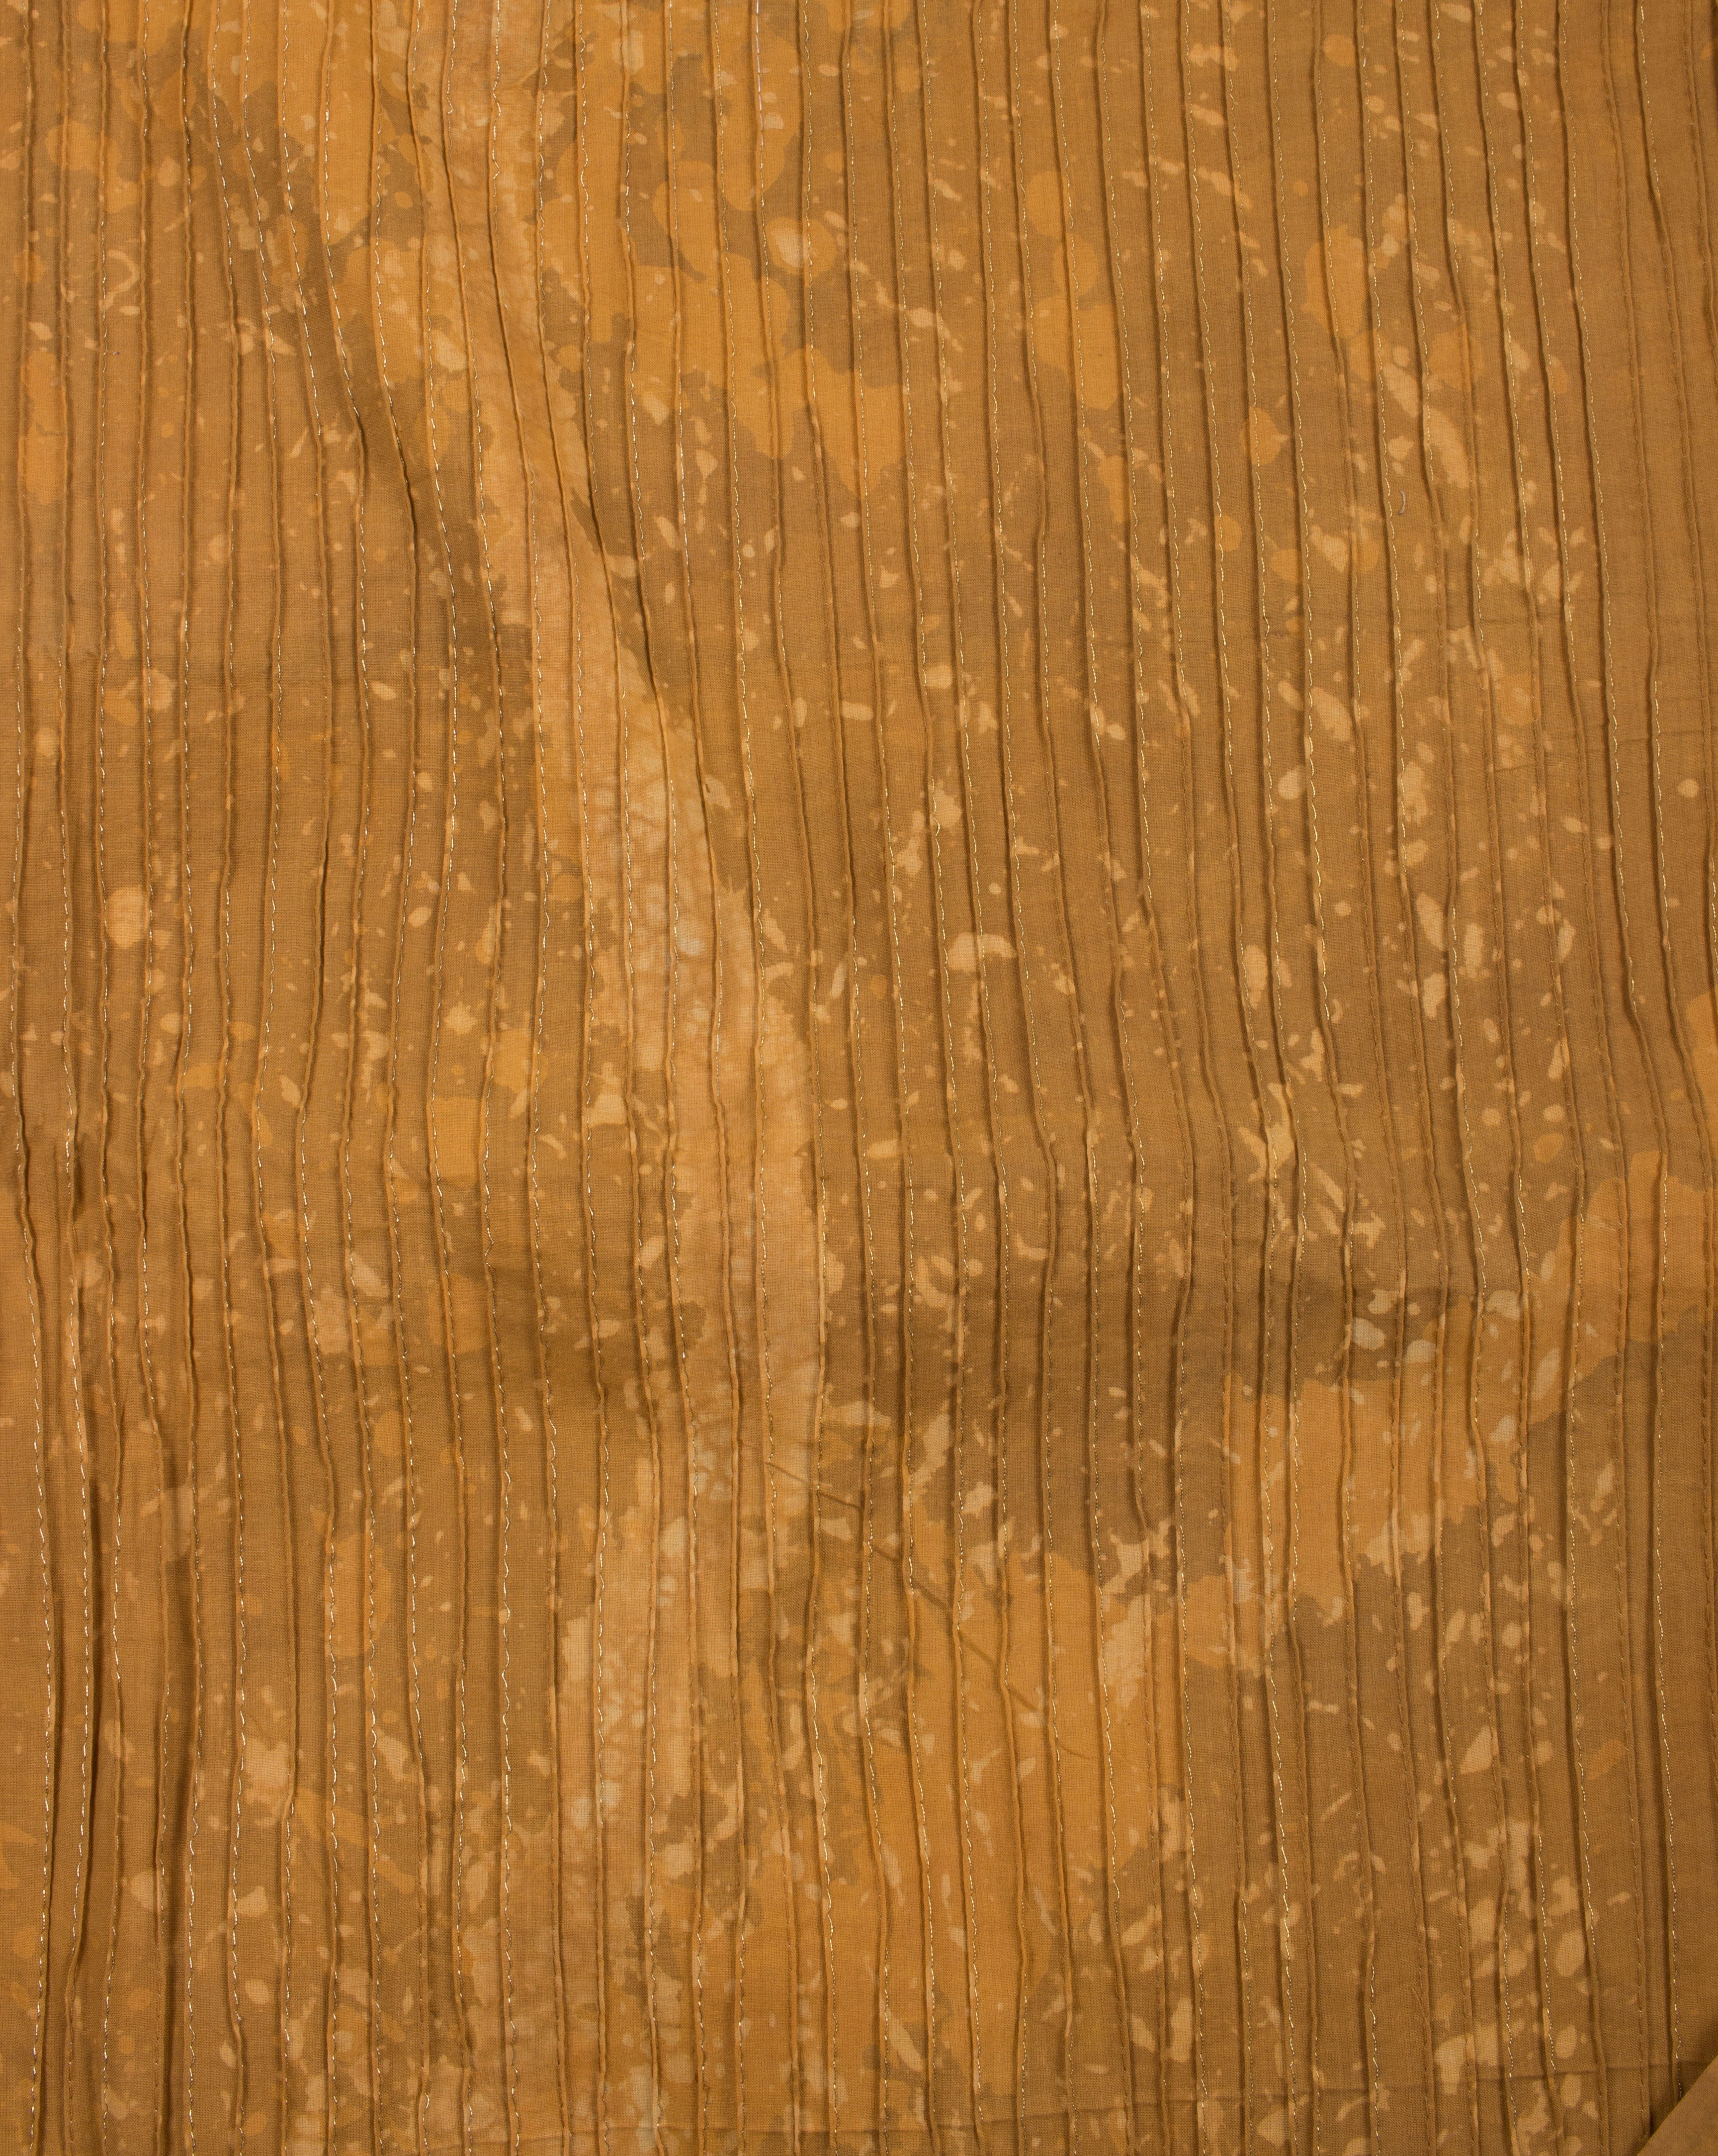 Mustard Yellow Brown Abstract Hand Block Zari Pin-Tucks Cotton Fabric - Fabriclore.com